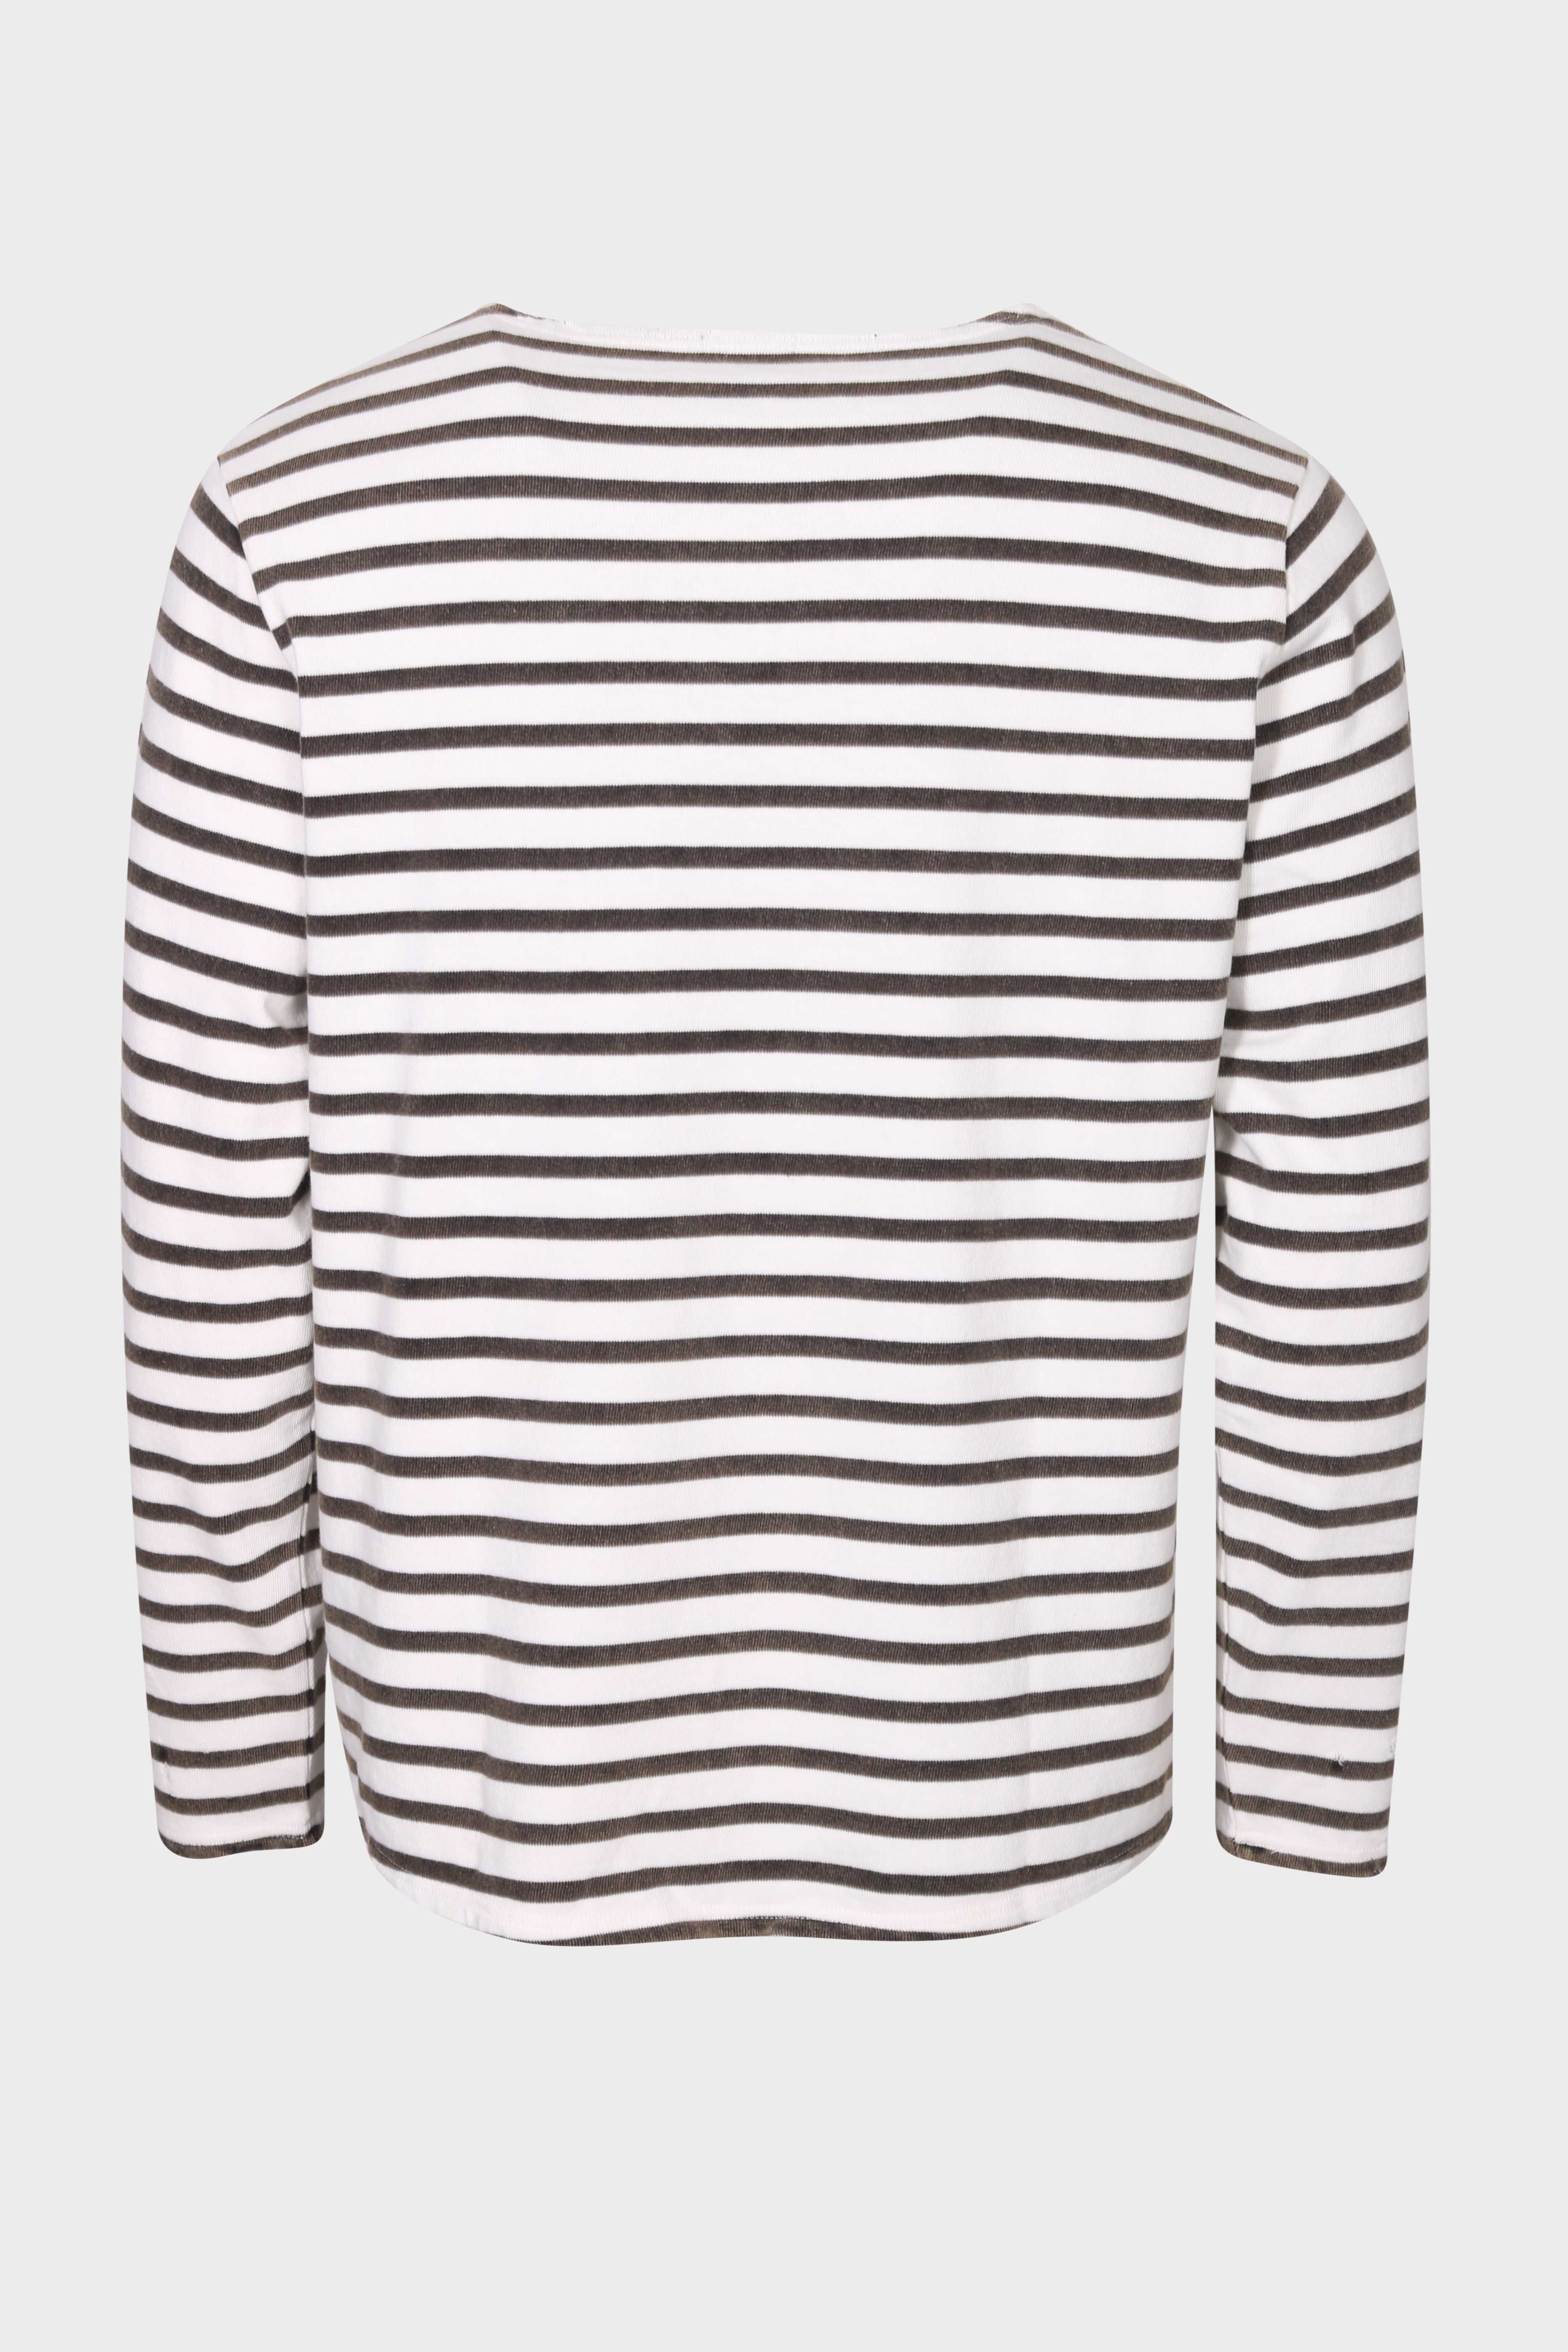 R13 Breton Sweater in Black/Ecru Stripe